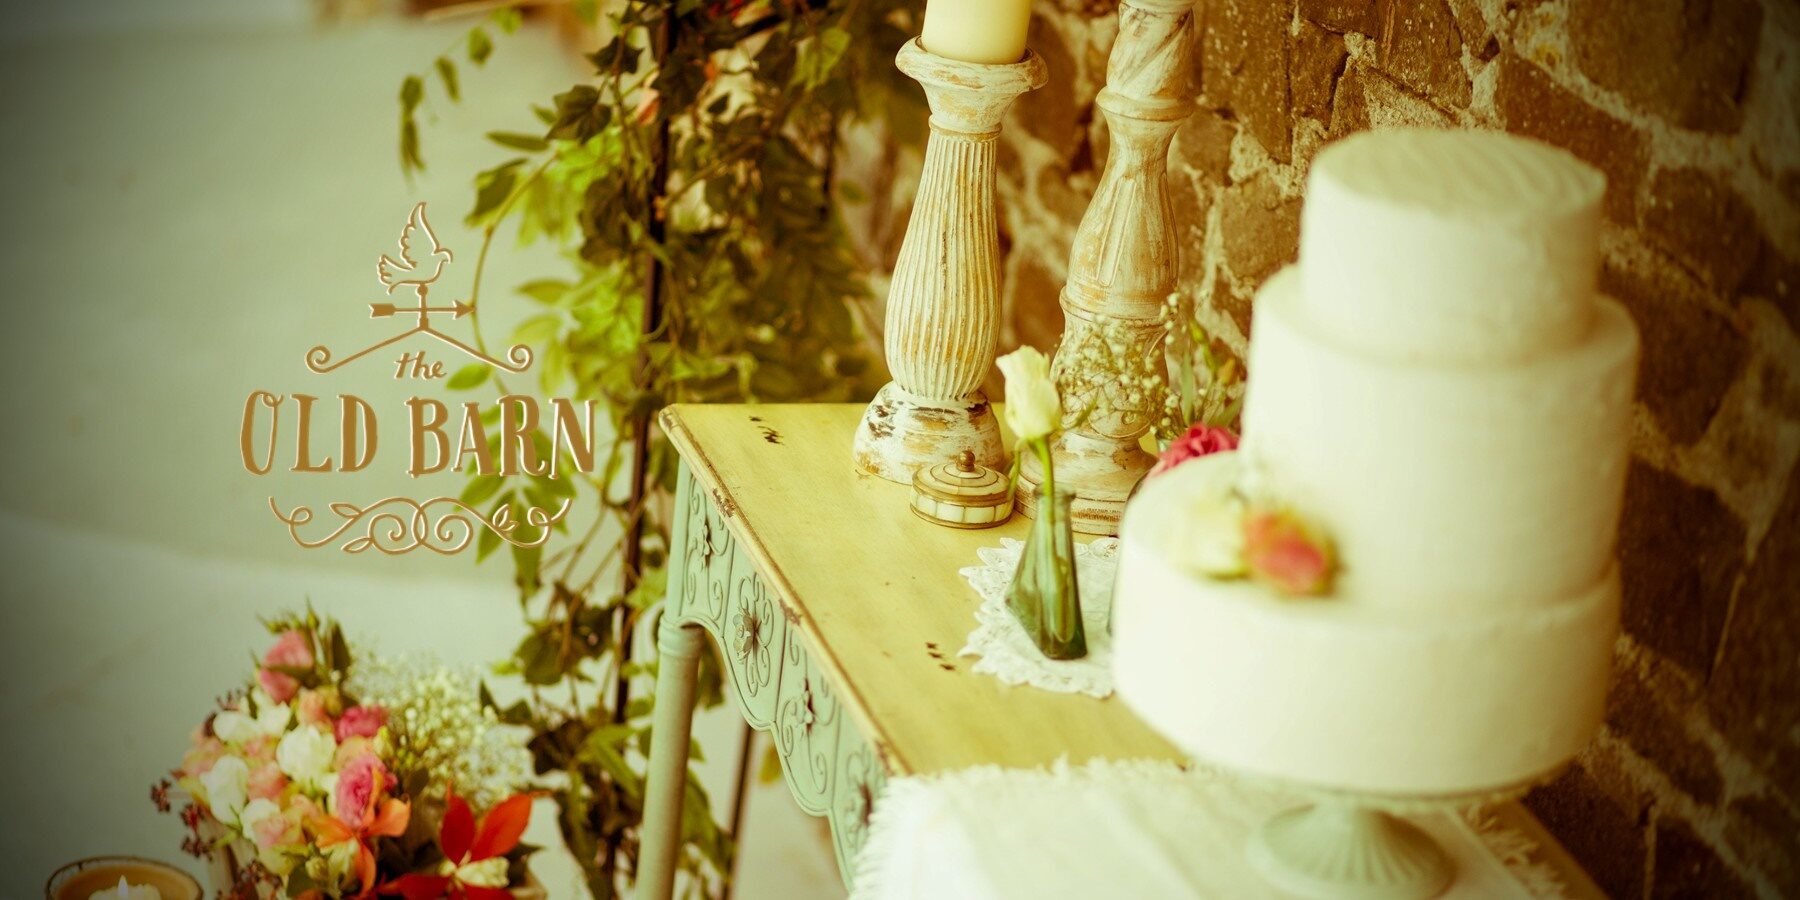 Vintage wedding venue cake